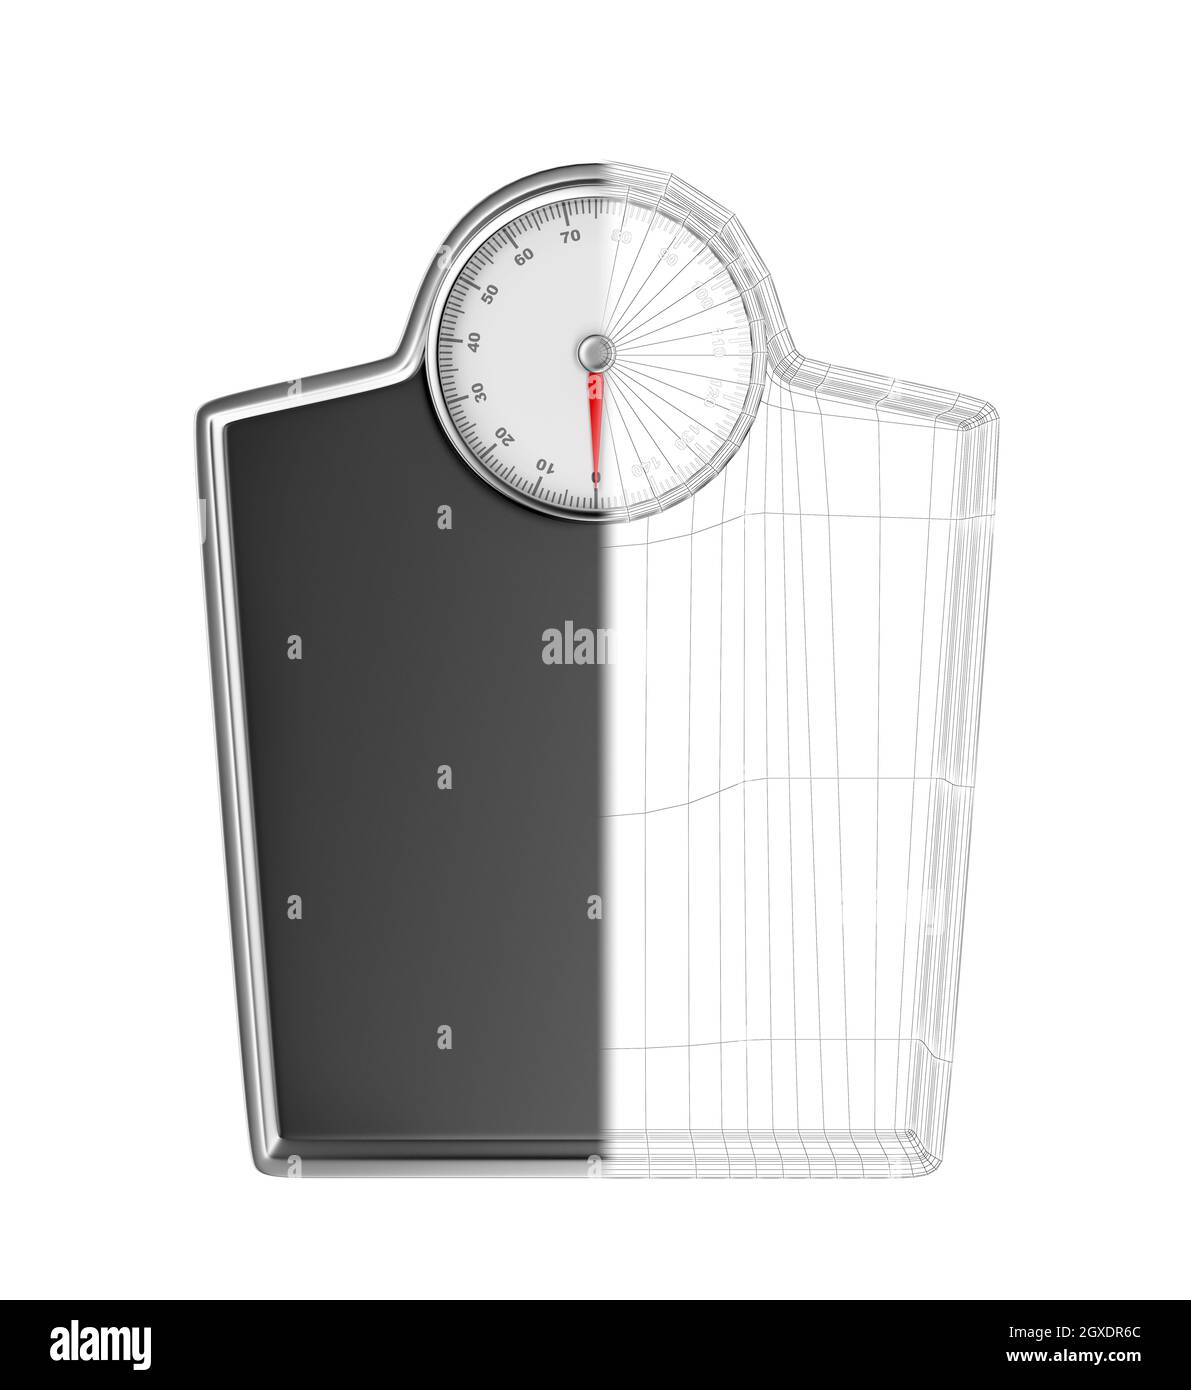 Analog weight scale stock image. Image of shape, isolated - 146093597